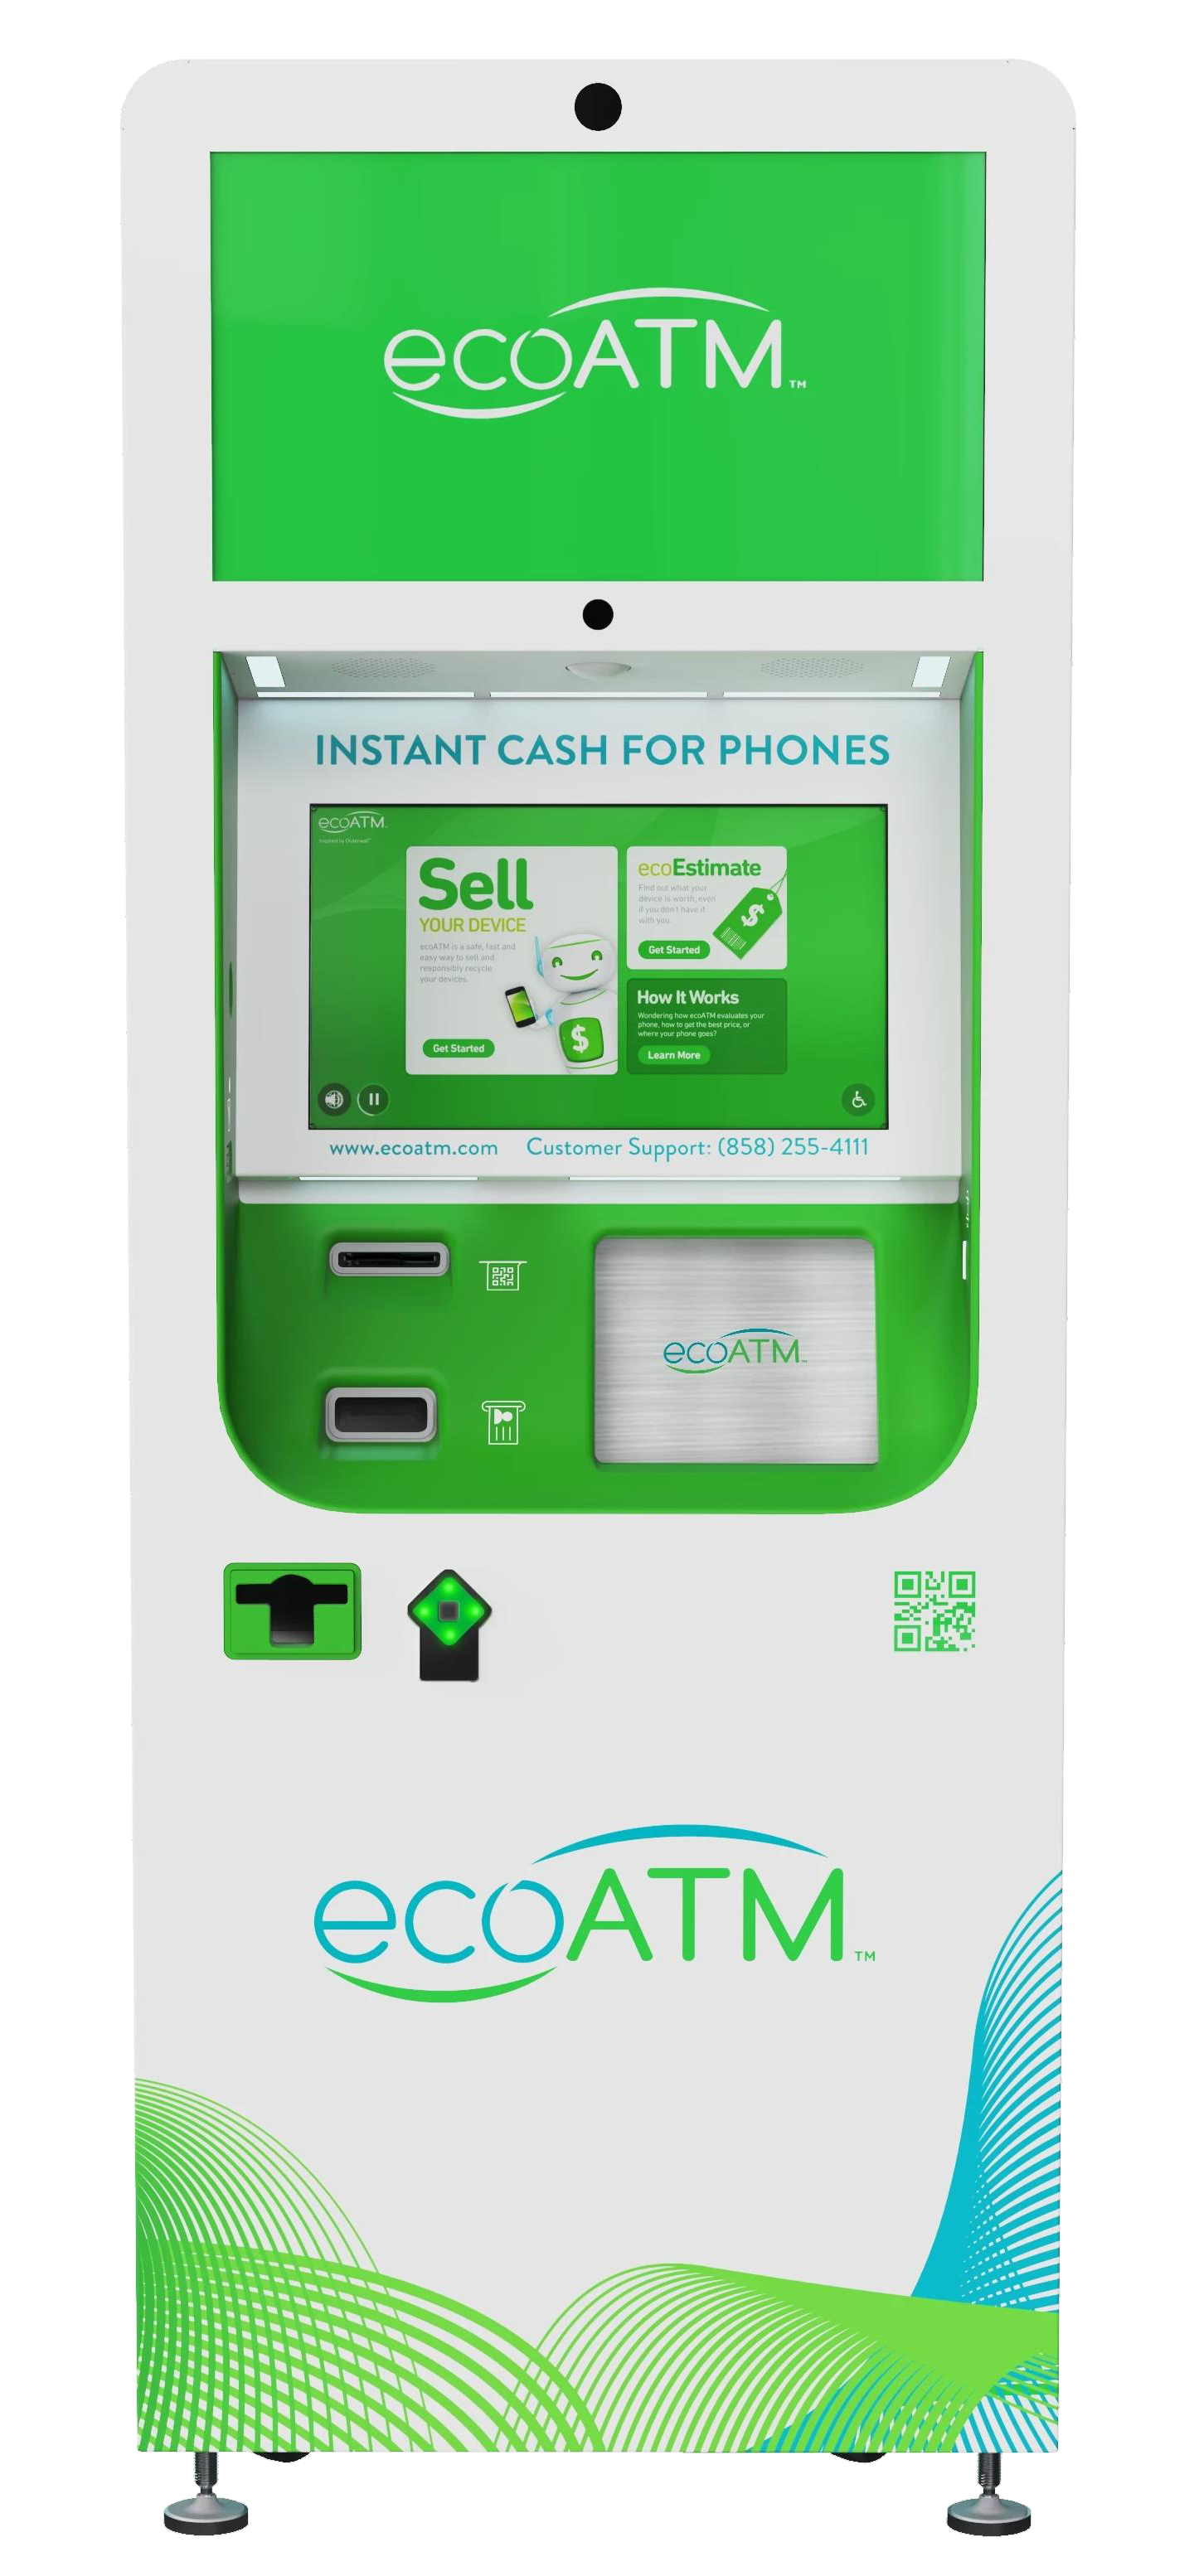 ecoatm instant cash for phones kiosk